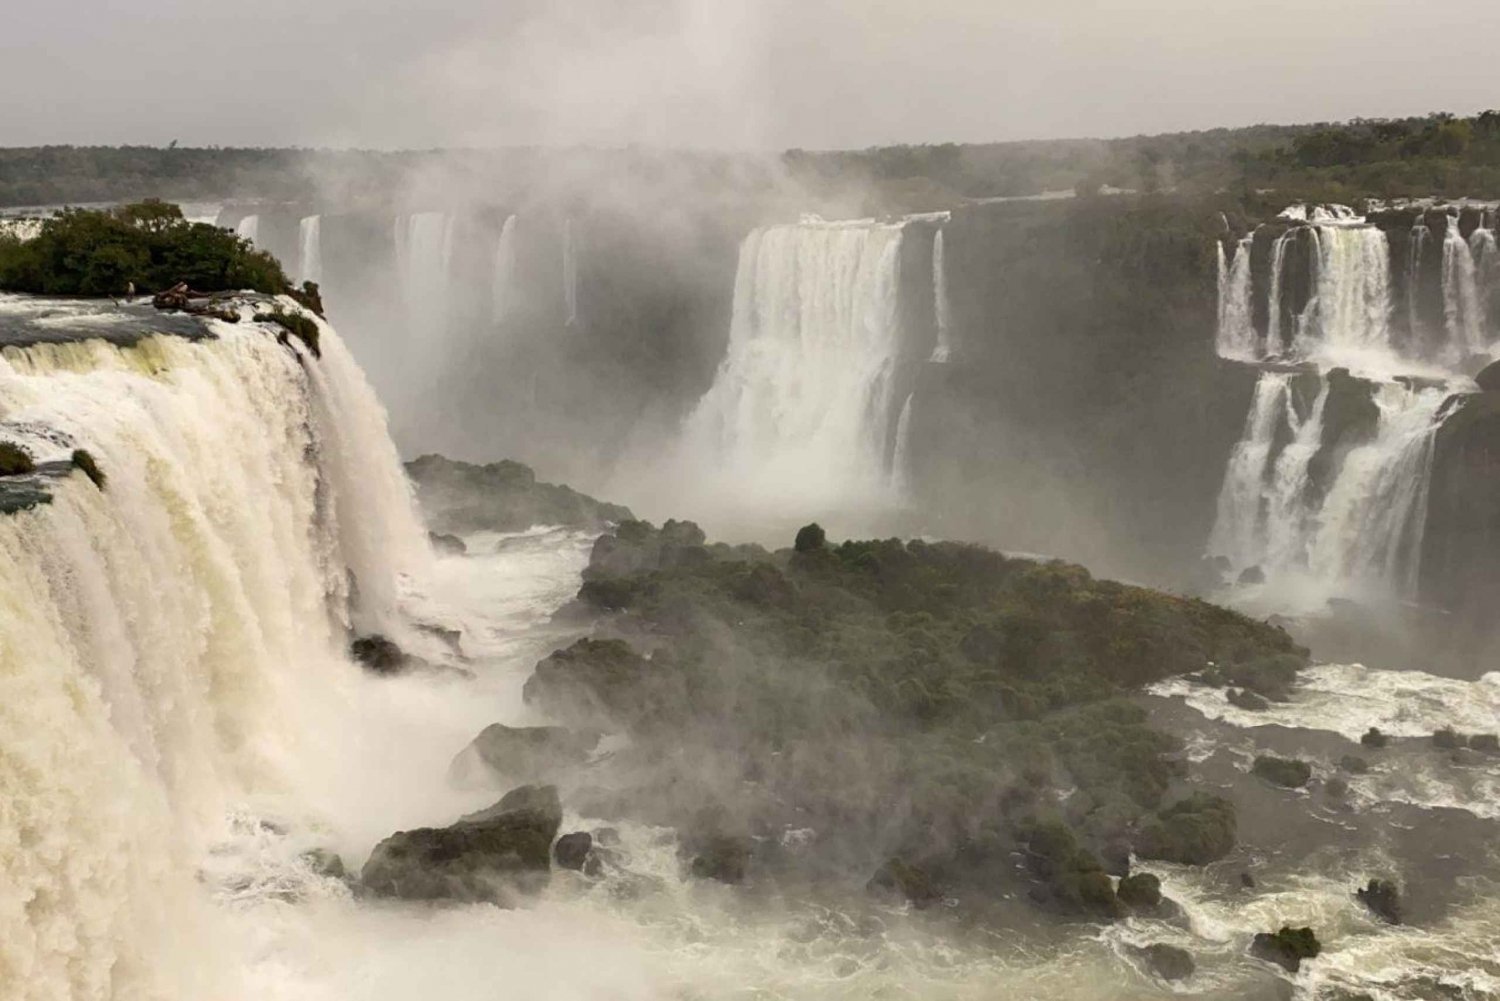 Iguazu Falls Private Tour in Argentina with Guide